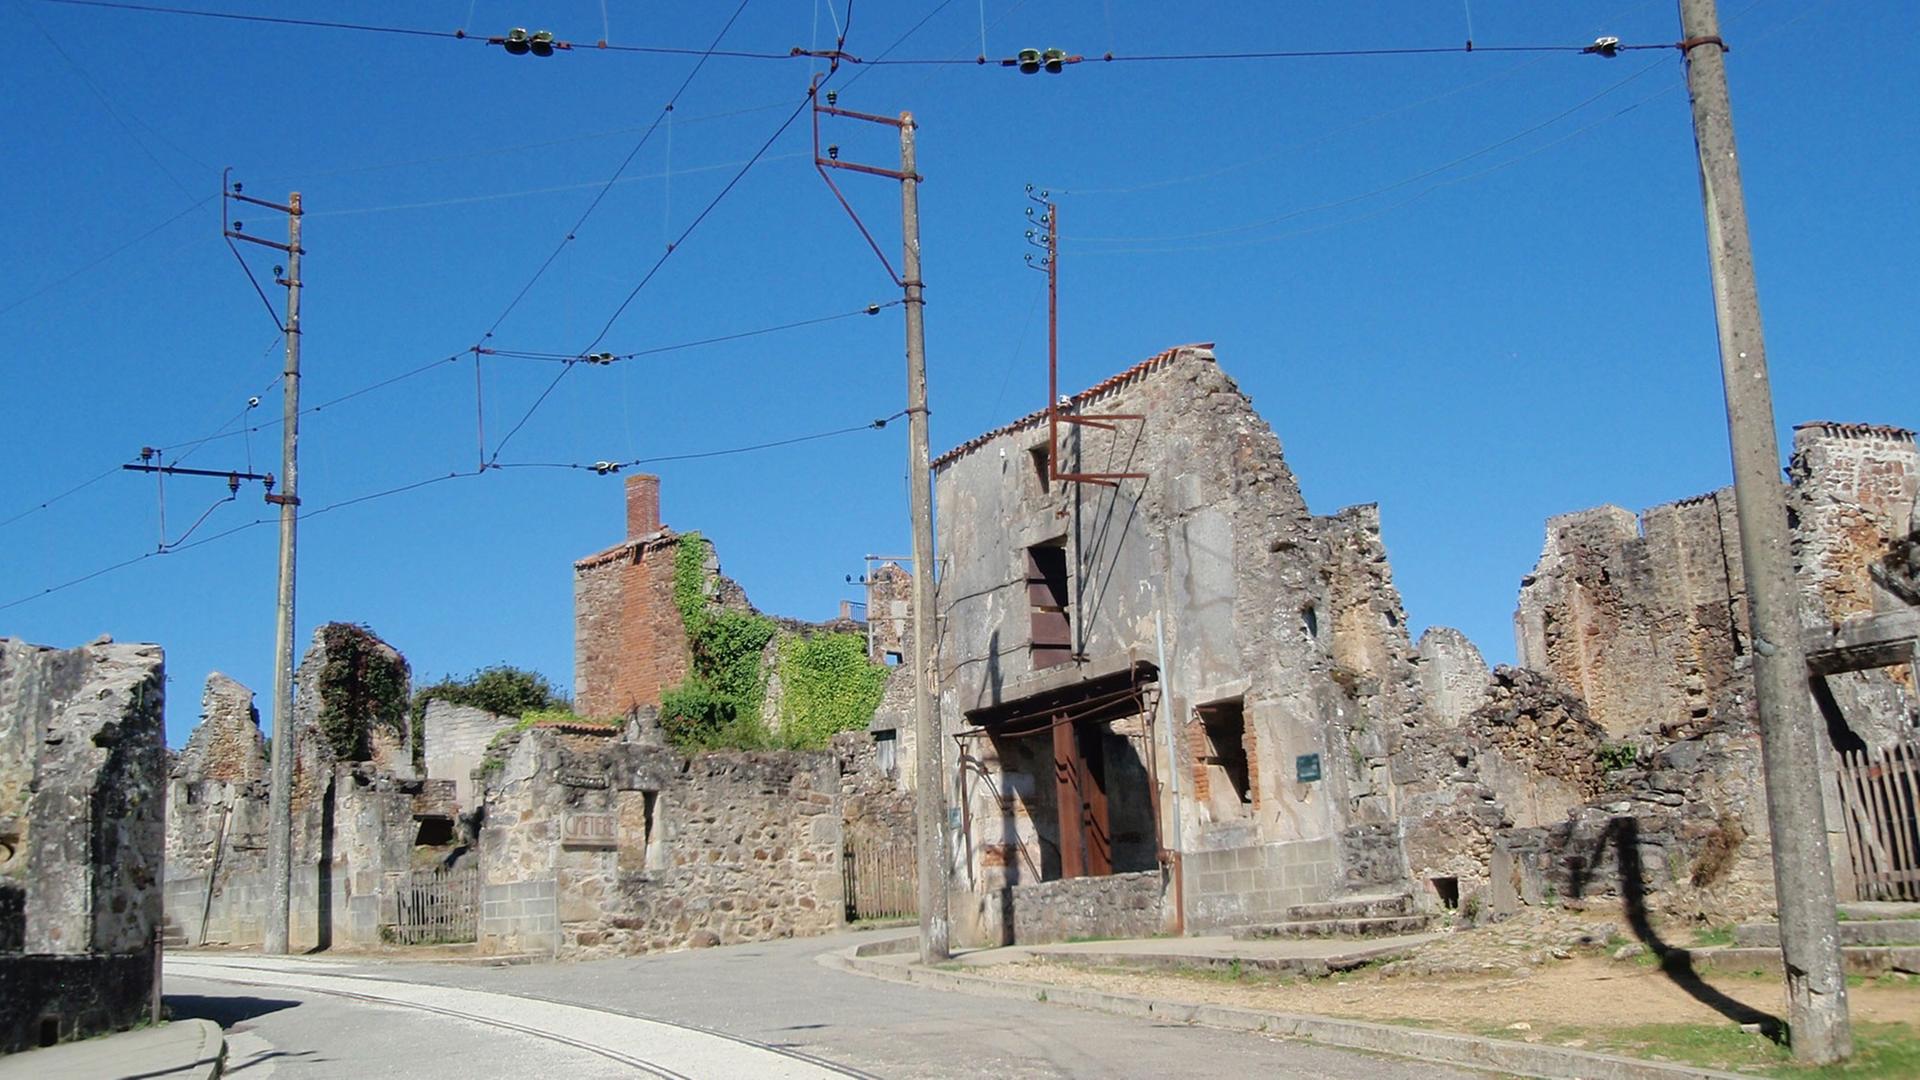 Das französische Ruinendorf Oradour-sur-Glane war 1944 Schauplatz eines Kriegsverbrechens der Waffen-SS, bei dem der komplette Ort zerstört und fast alle seine Einwohner ermordet wurden.